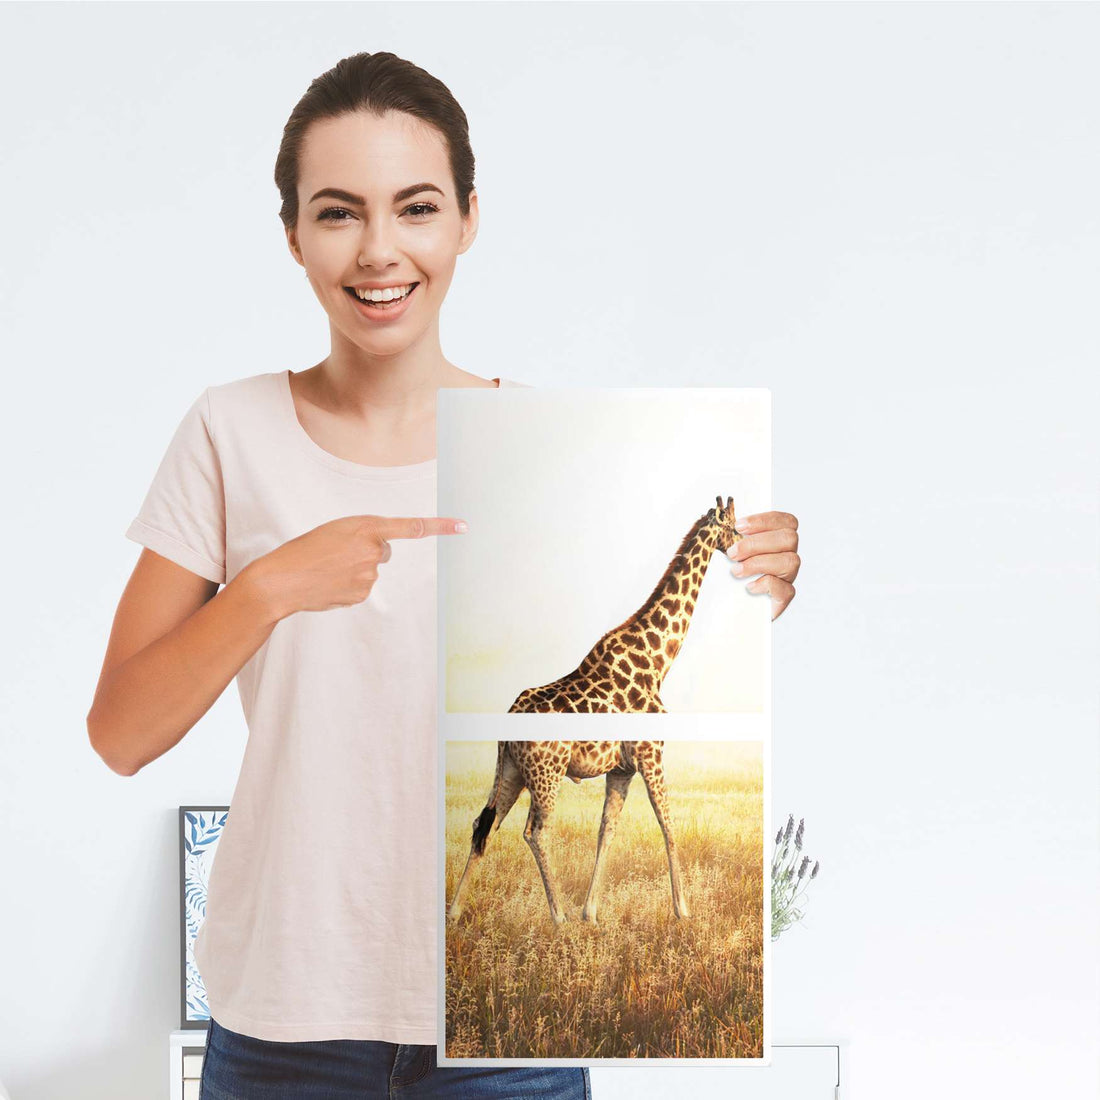 Klebefolie für Möbel Savanna Giraffe - IKEA Expedit Regal 2 Türen Hoch - Folie